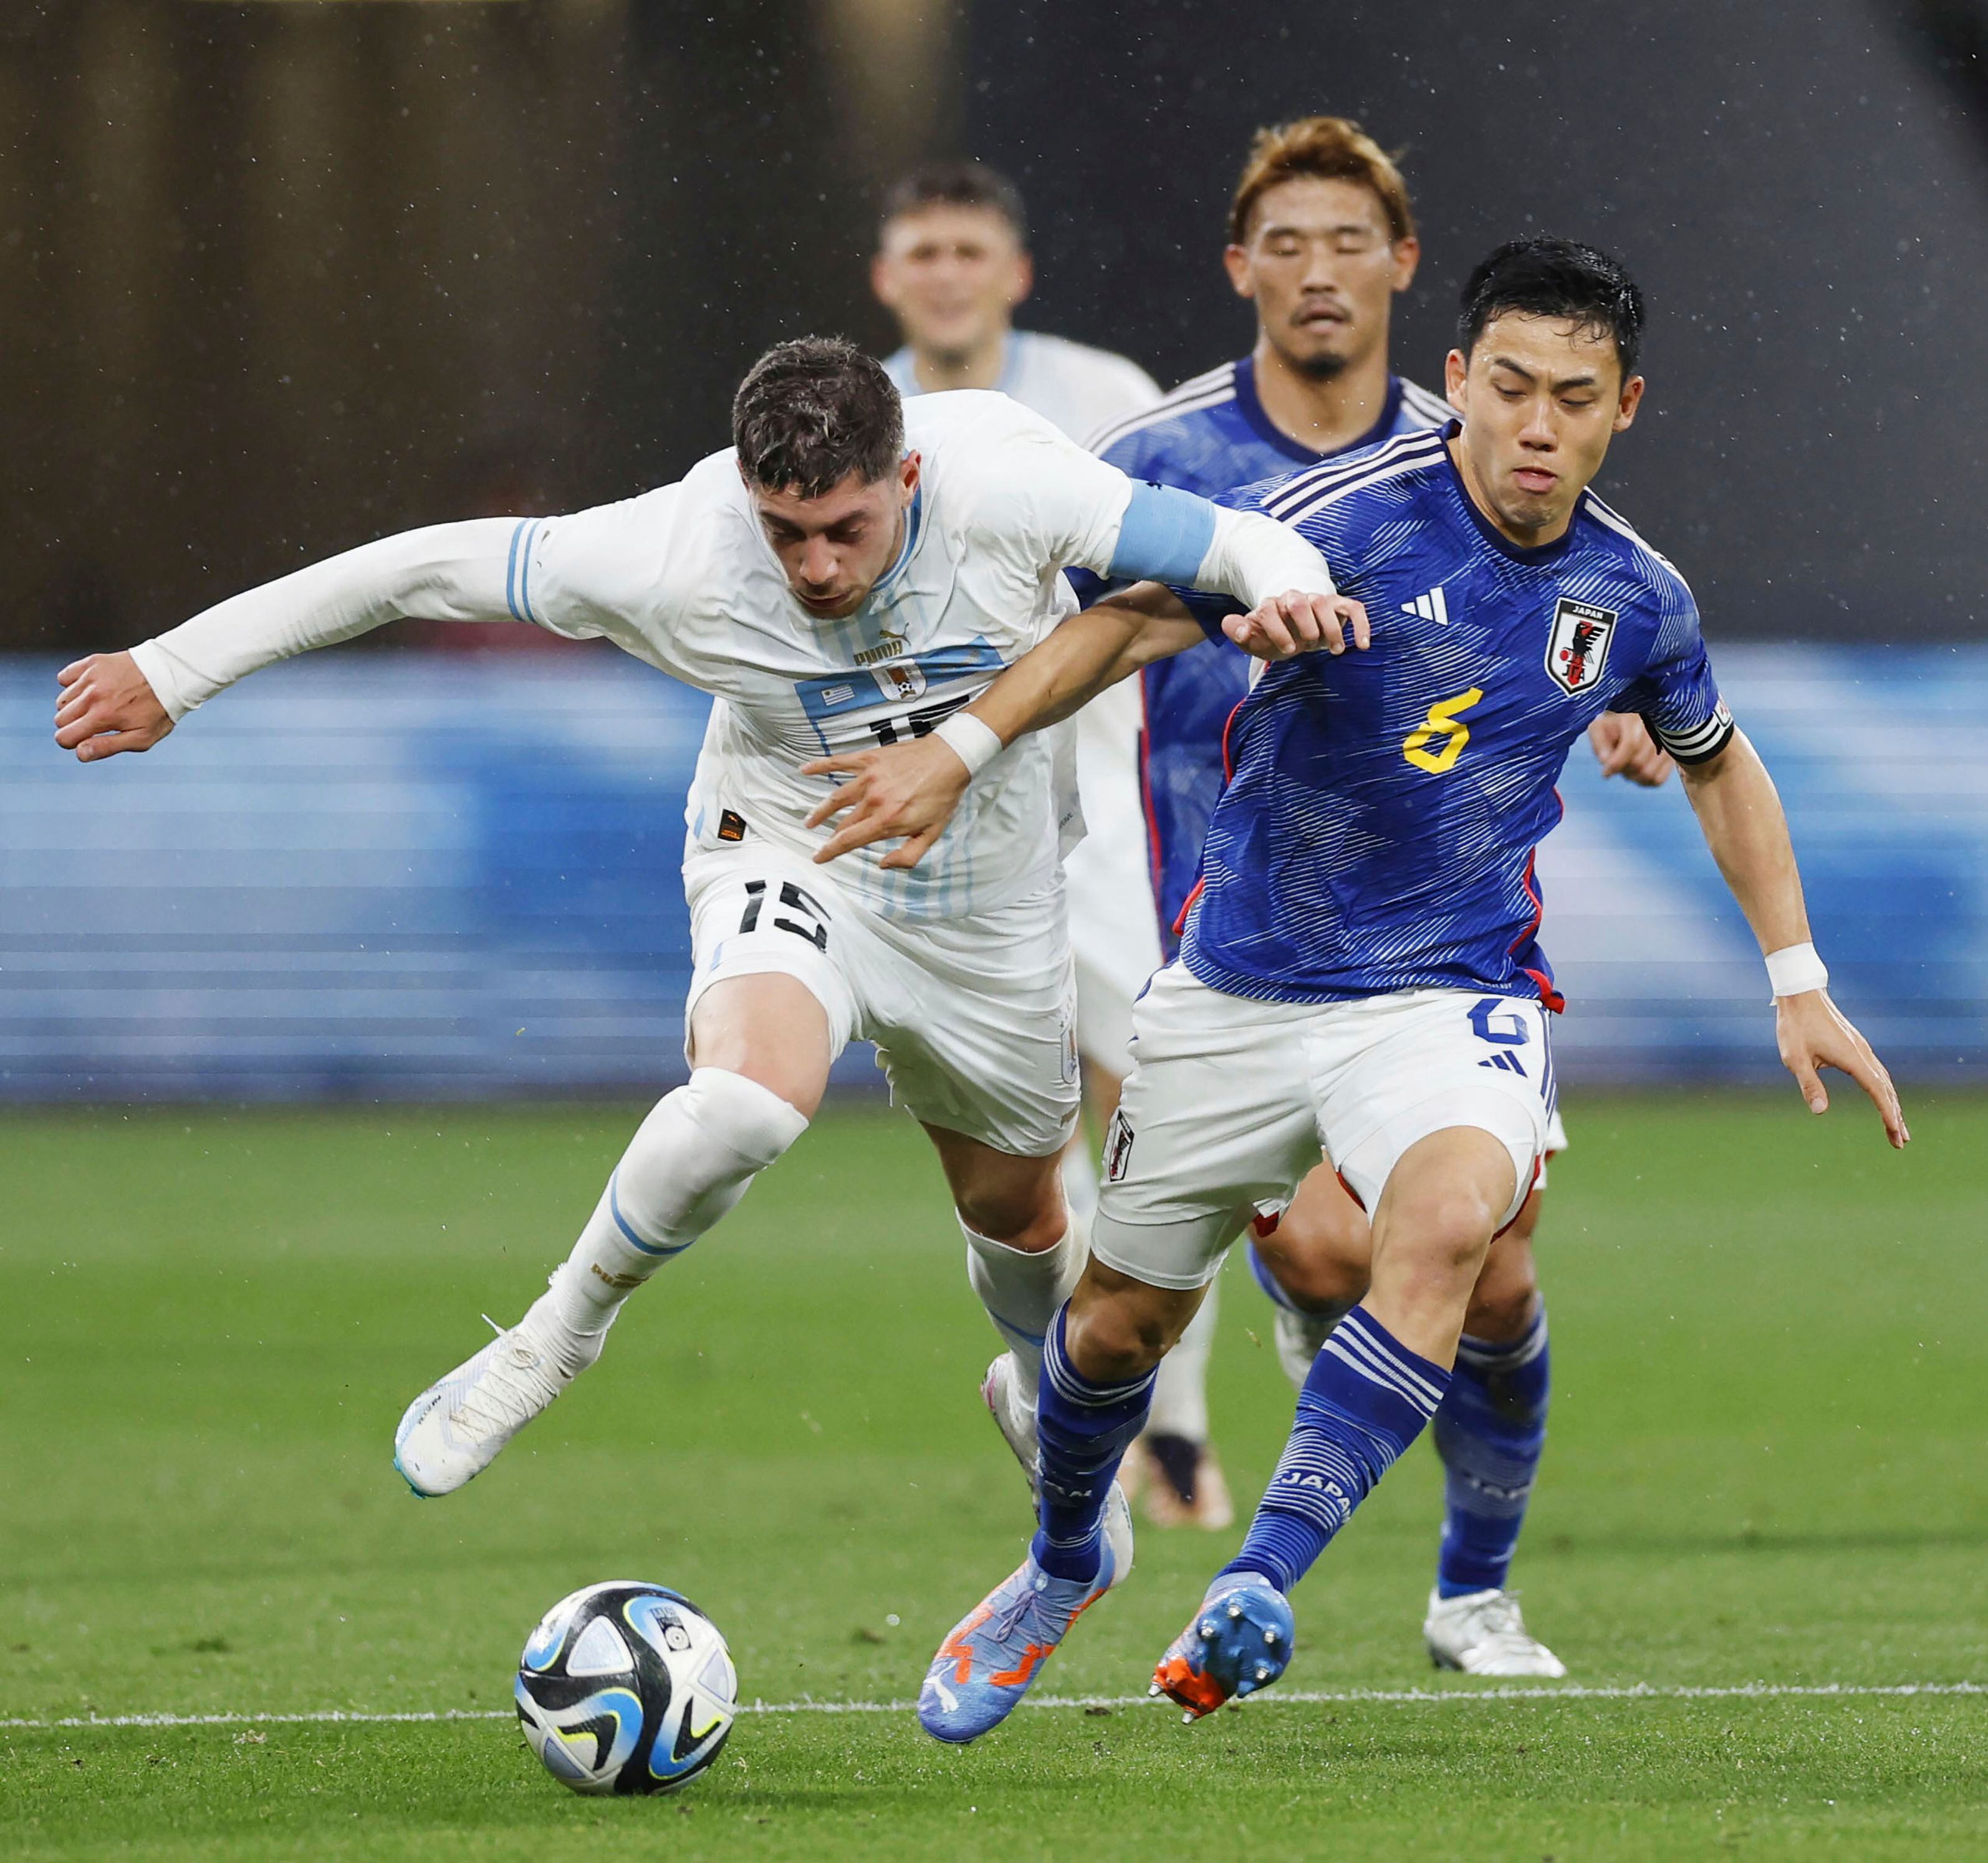 Federico Valverde de Uruguay y Wataru Endo de Japón pelean por el balón en el encuentro amistoso en el Estadio Nacional de Tokio, Japón el viernes 24 de marzo del 2023. (Kyodo News via AP)